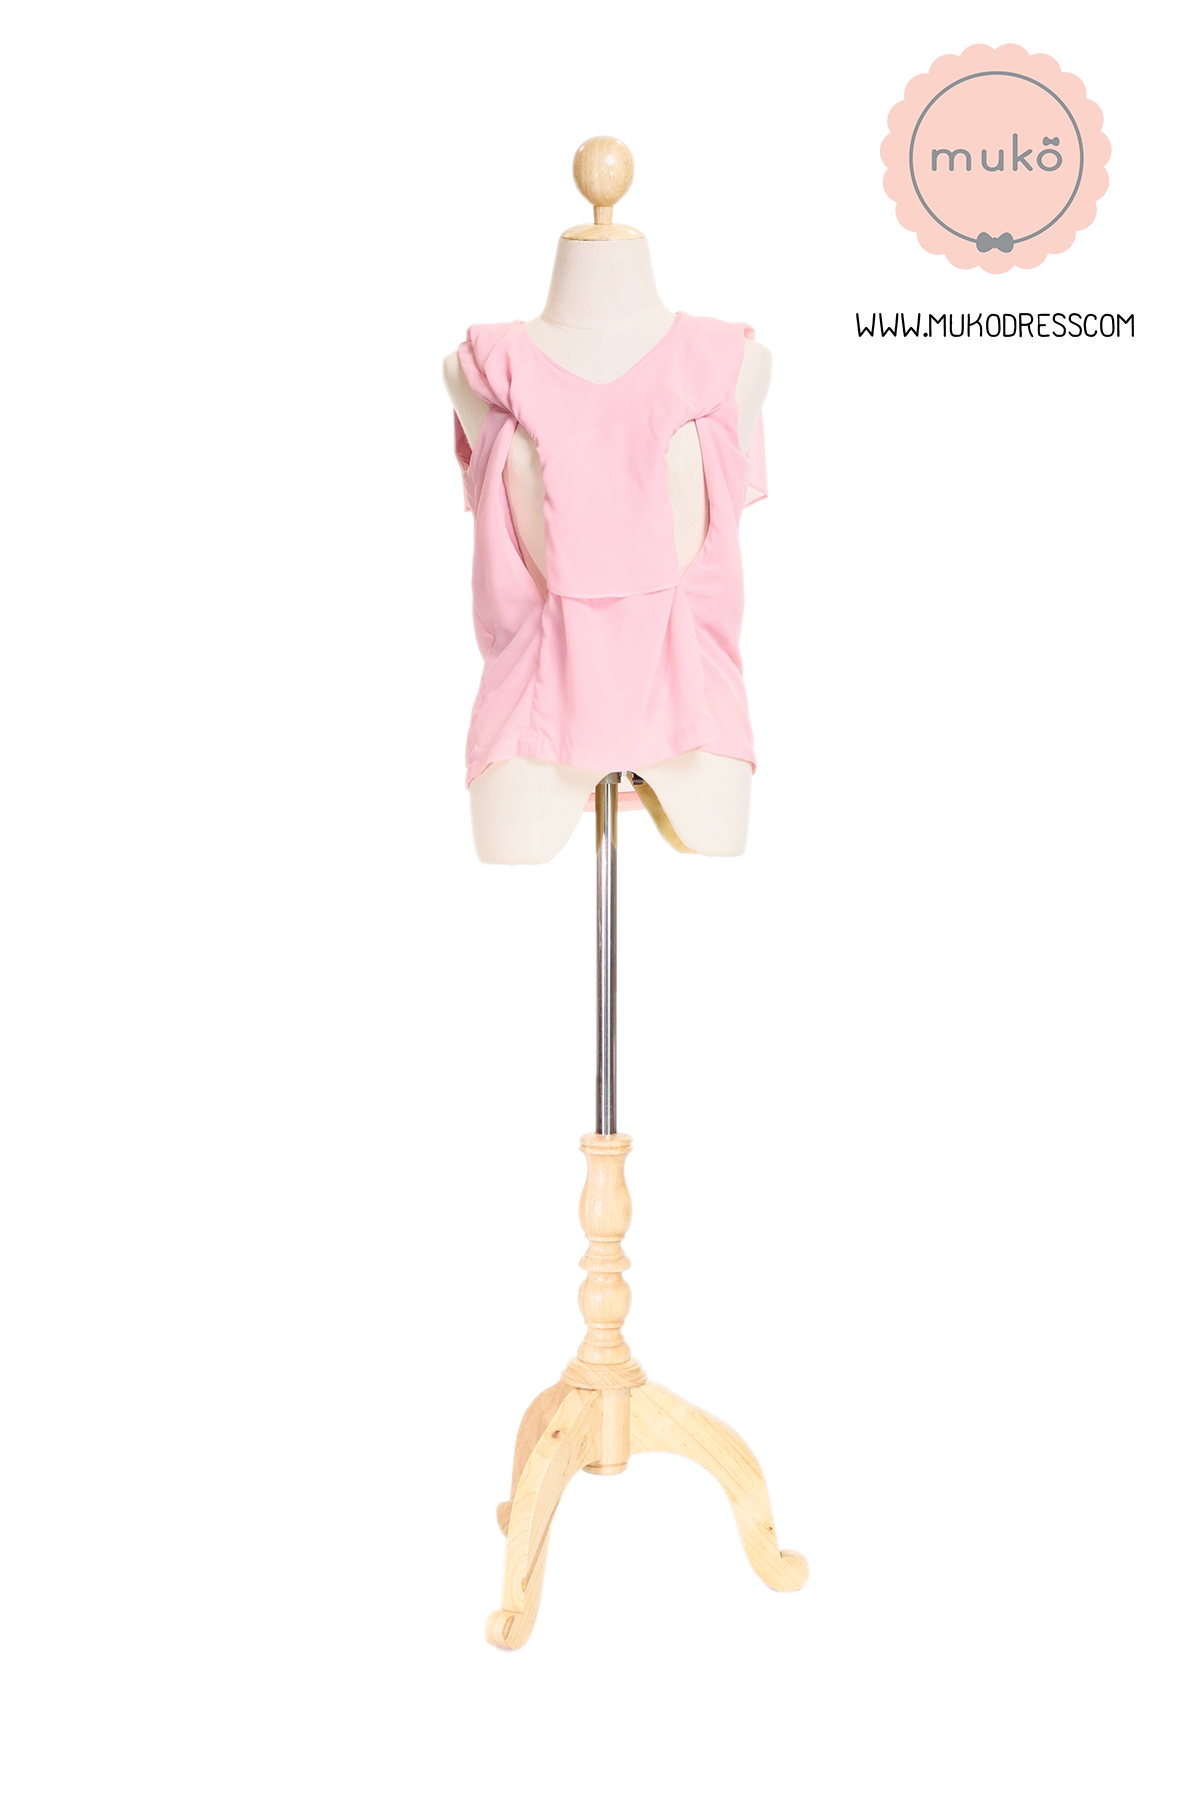 Muko Emma  เสื้อให้นม คลุมท้อง BSL03-024 สีชมพู